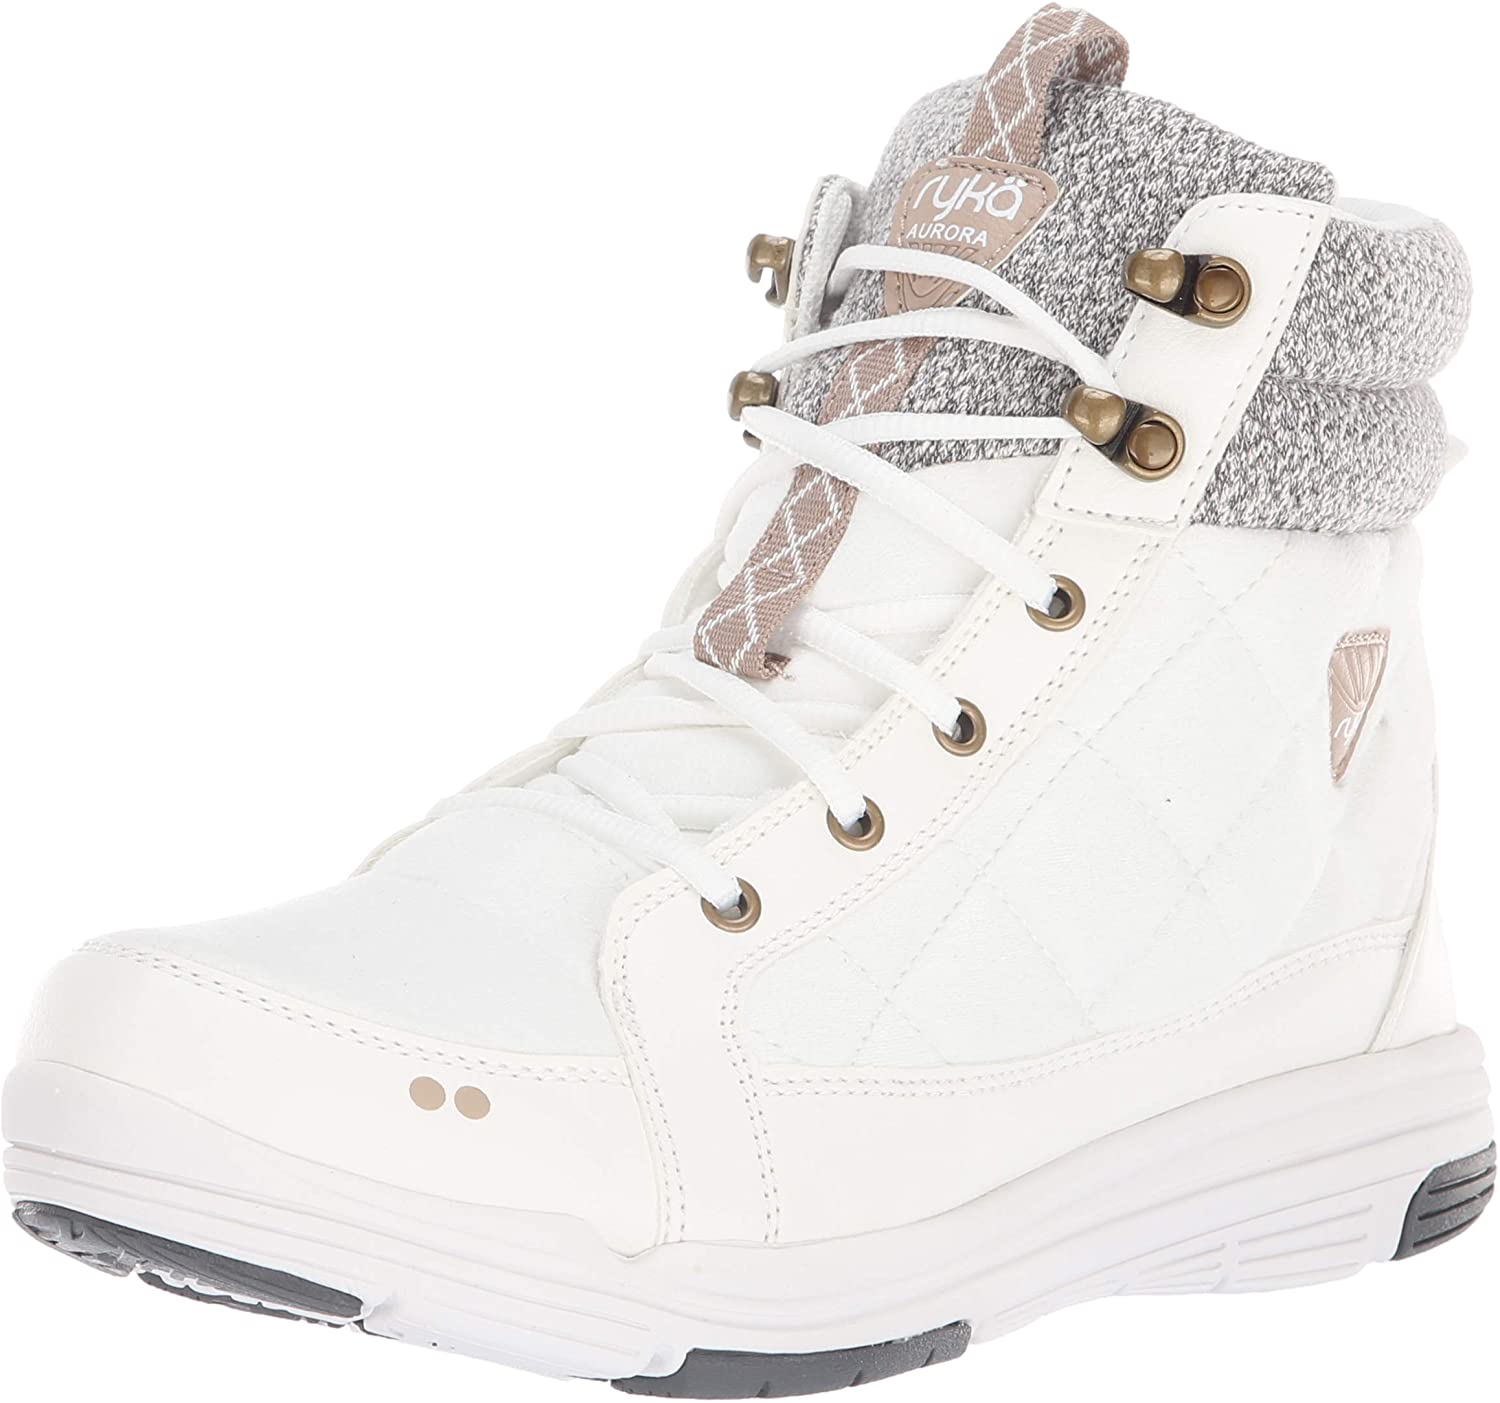 Ryka Women's Aurora Ankle Boot, Bright White, Size 8.5 W6k0 | eBay